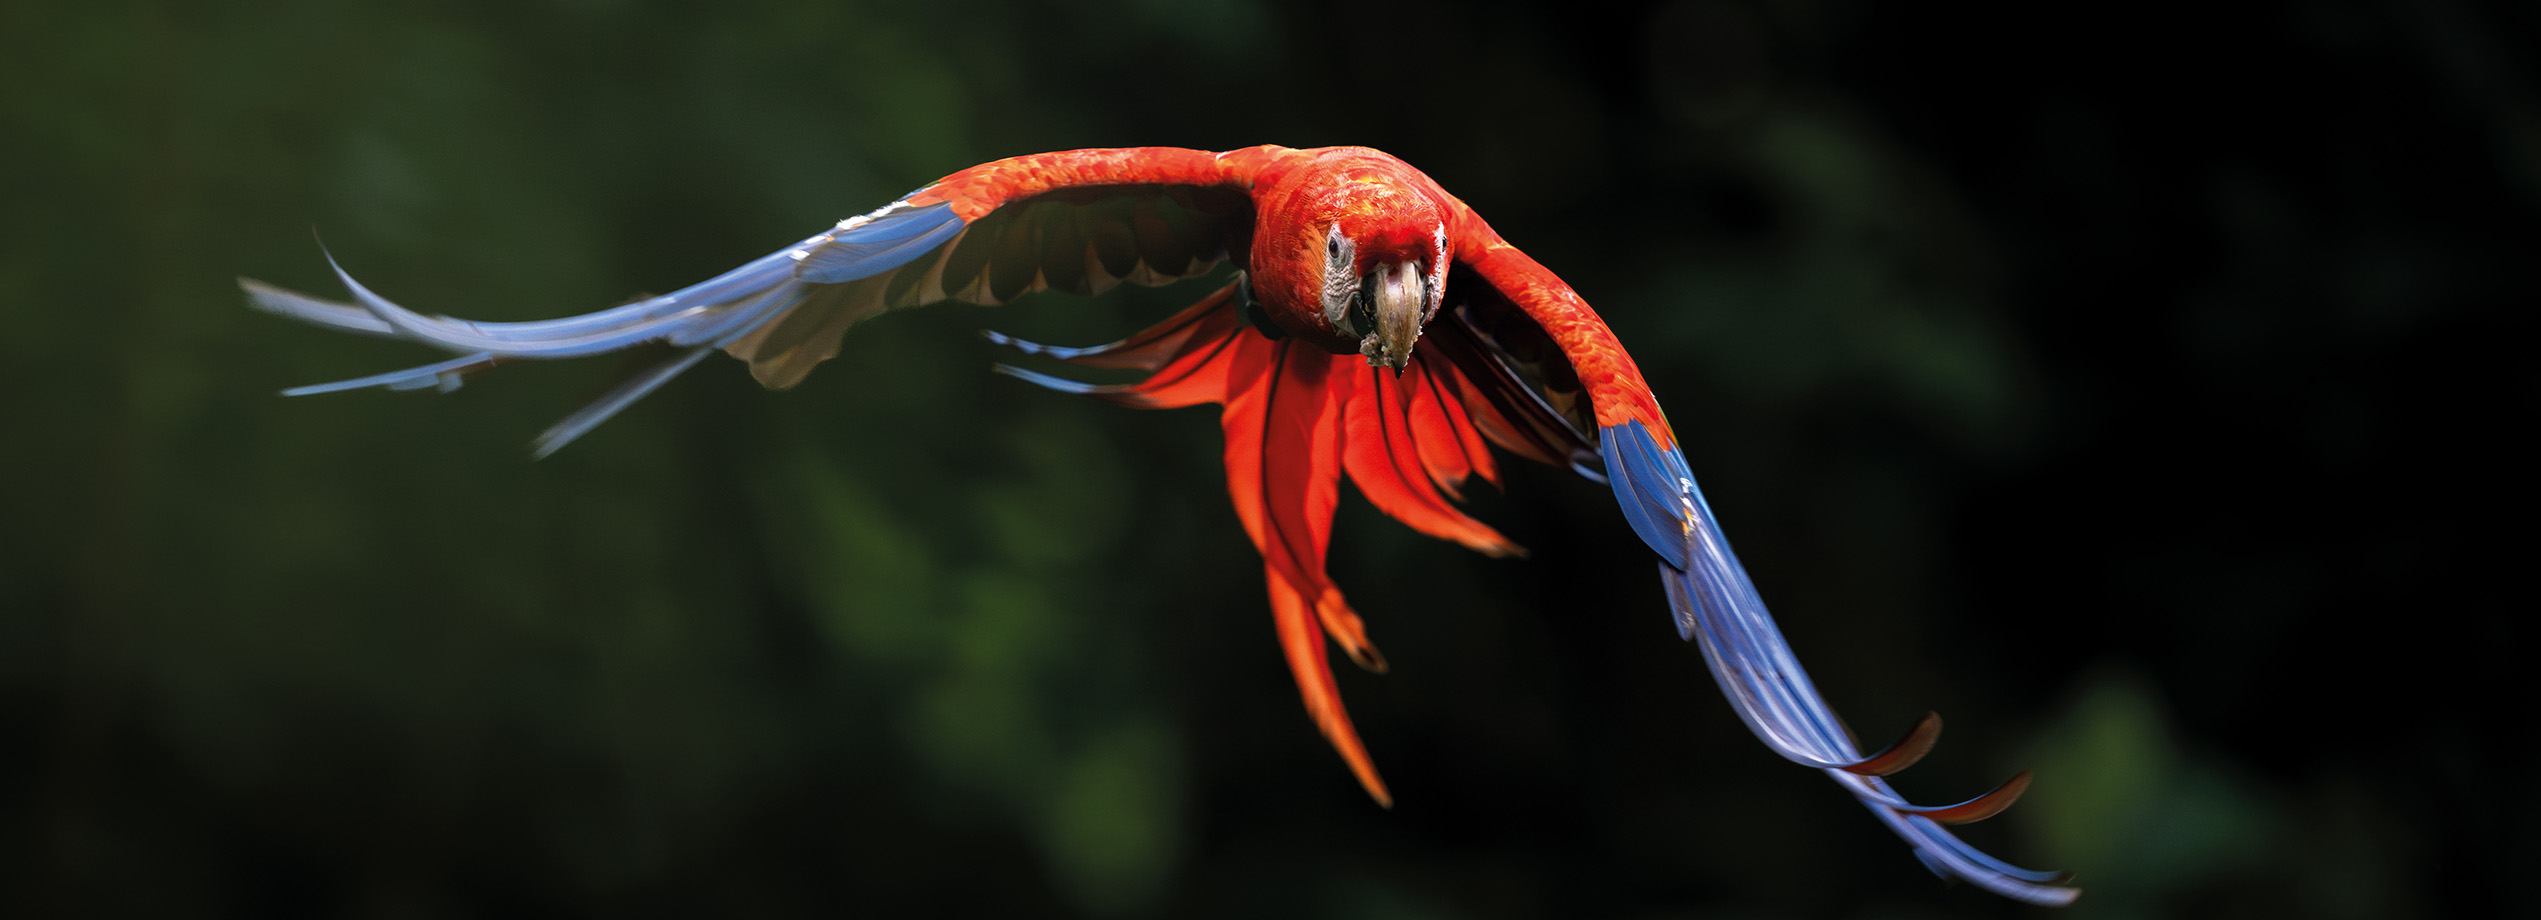 Photo d'un ara rouge et bleu en plein vol prise par David Pattyn. Cette image en haute définition capture la beauté et la grâce de cet oiseau exotique dans son habitat naturel, offrant un contraste saisissant avec le fond sombre. Magazine de photographie nature